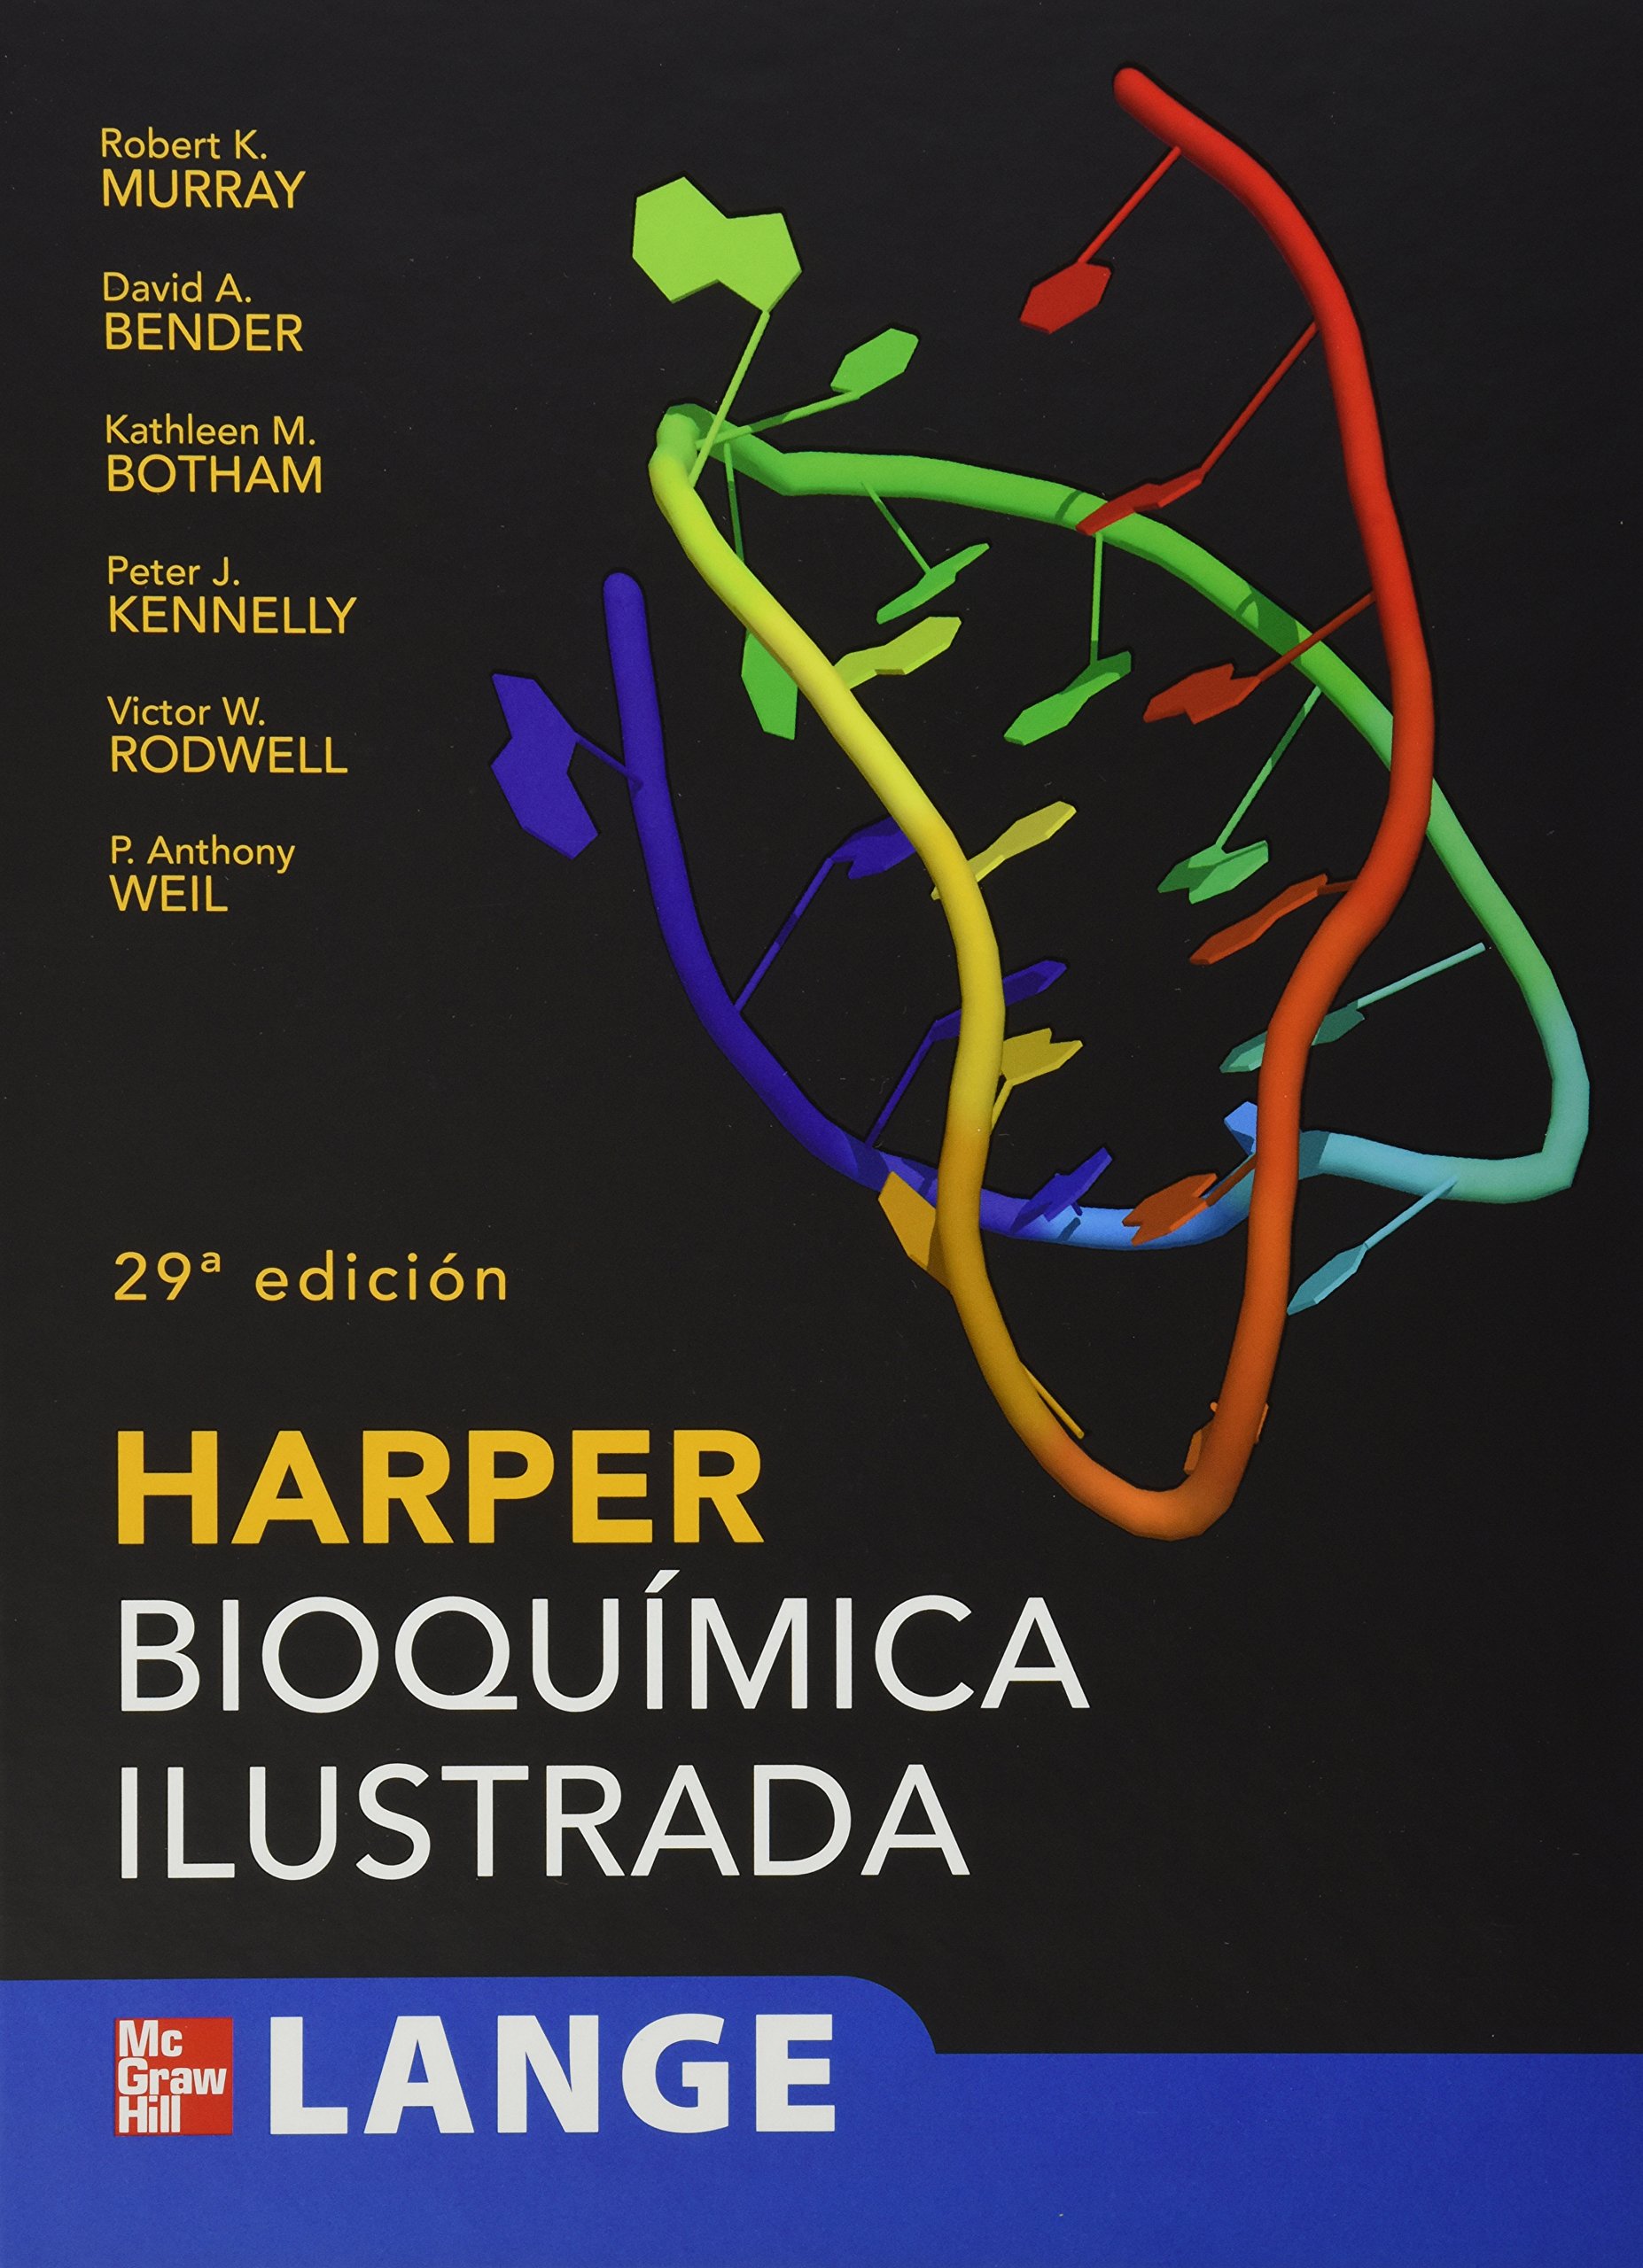 bioquimica de harper pdf